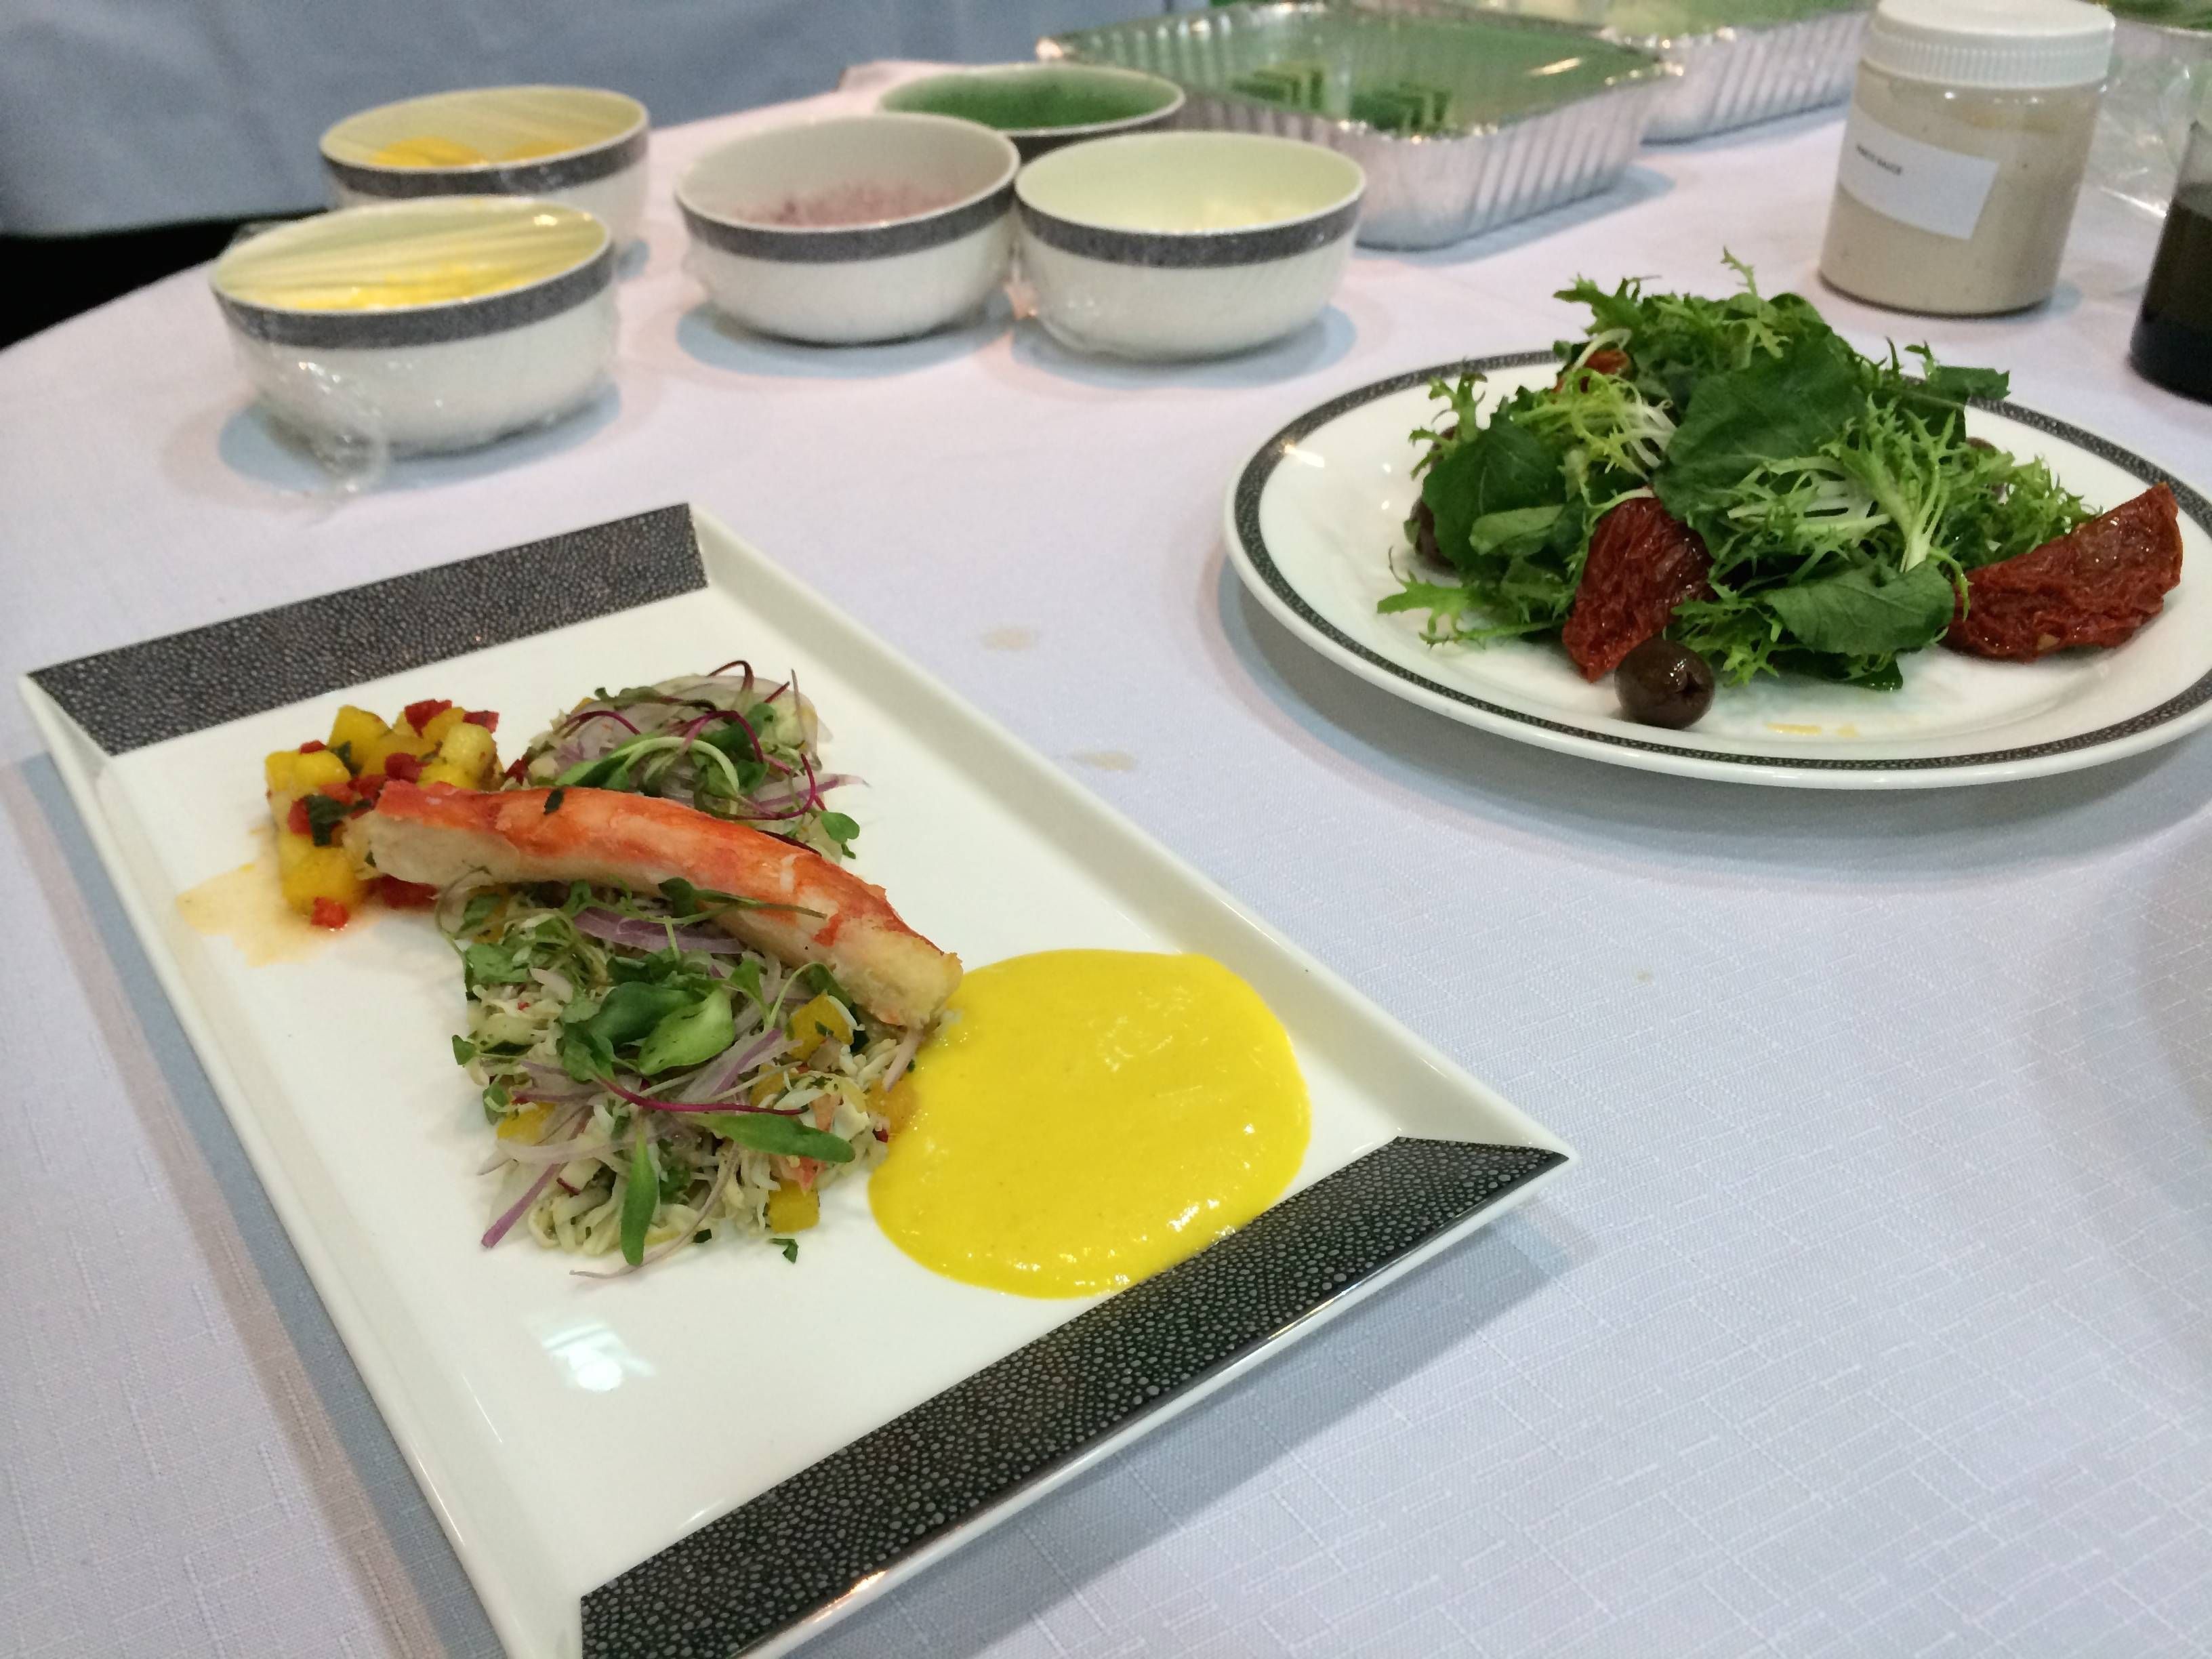 singapore menu presentation primeira classe degustacao passageirodeprimeira